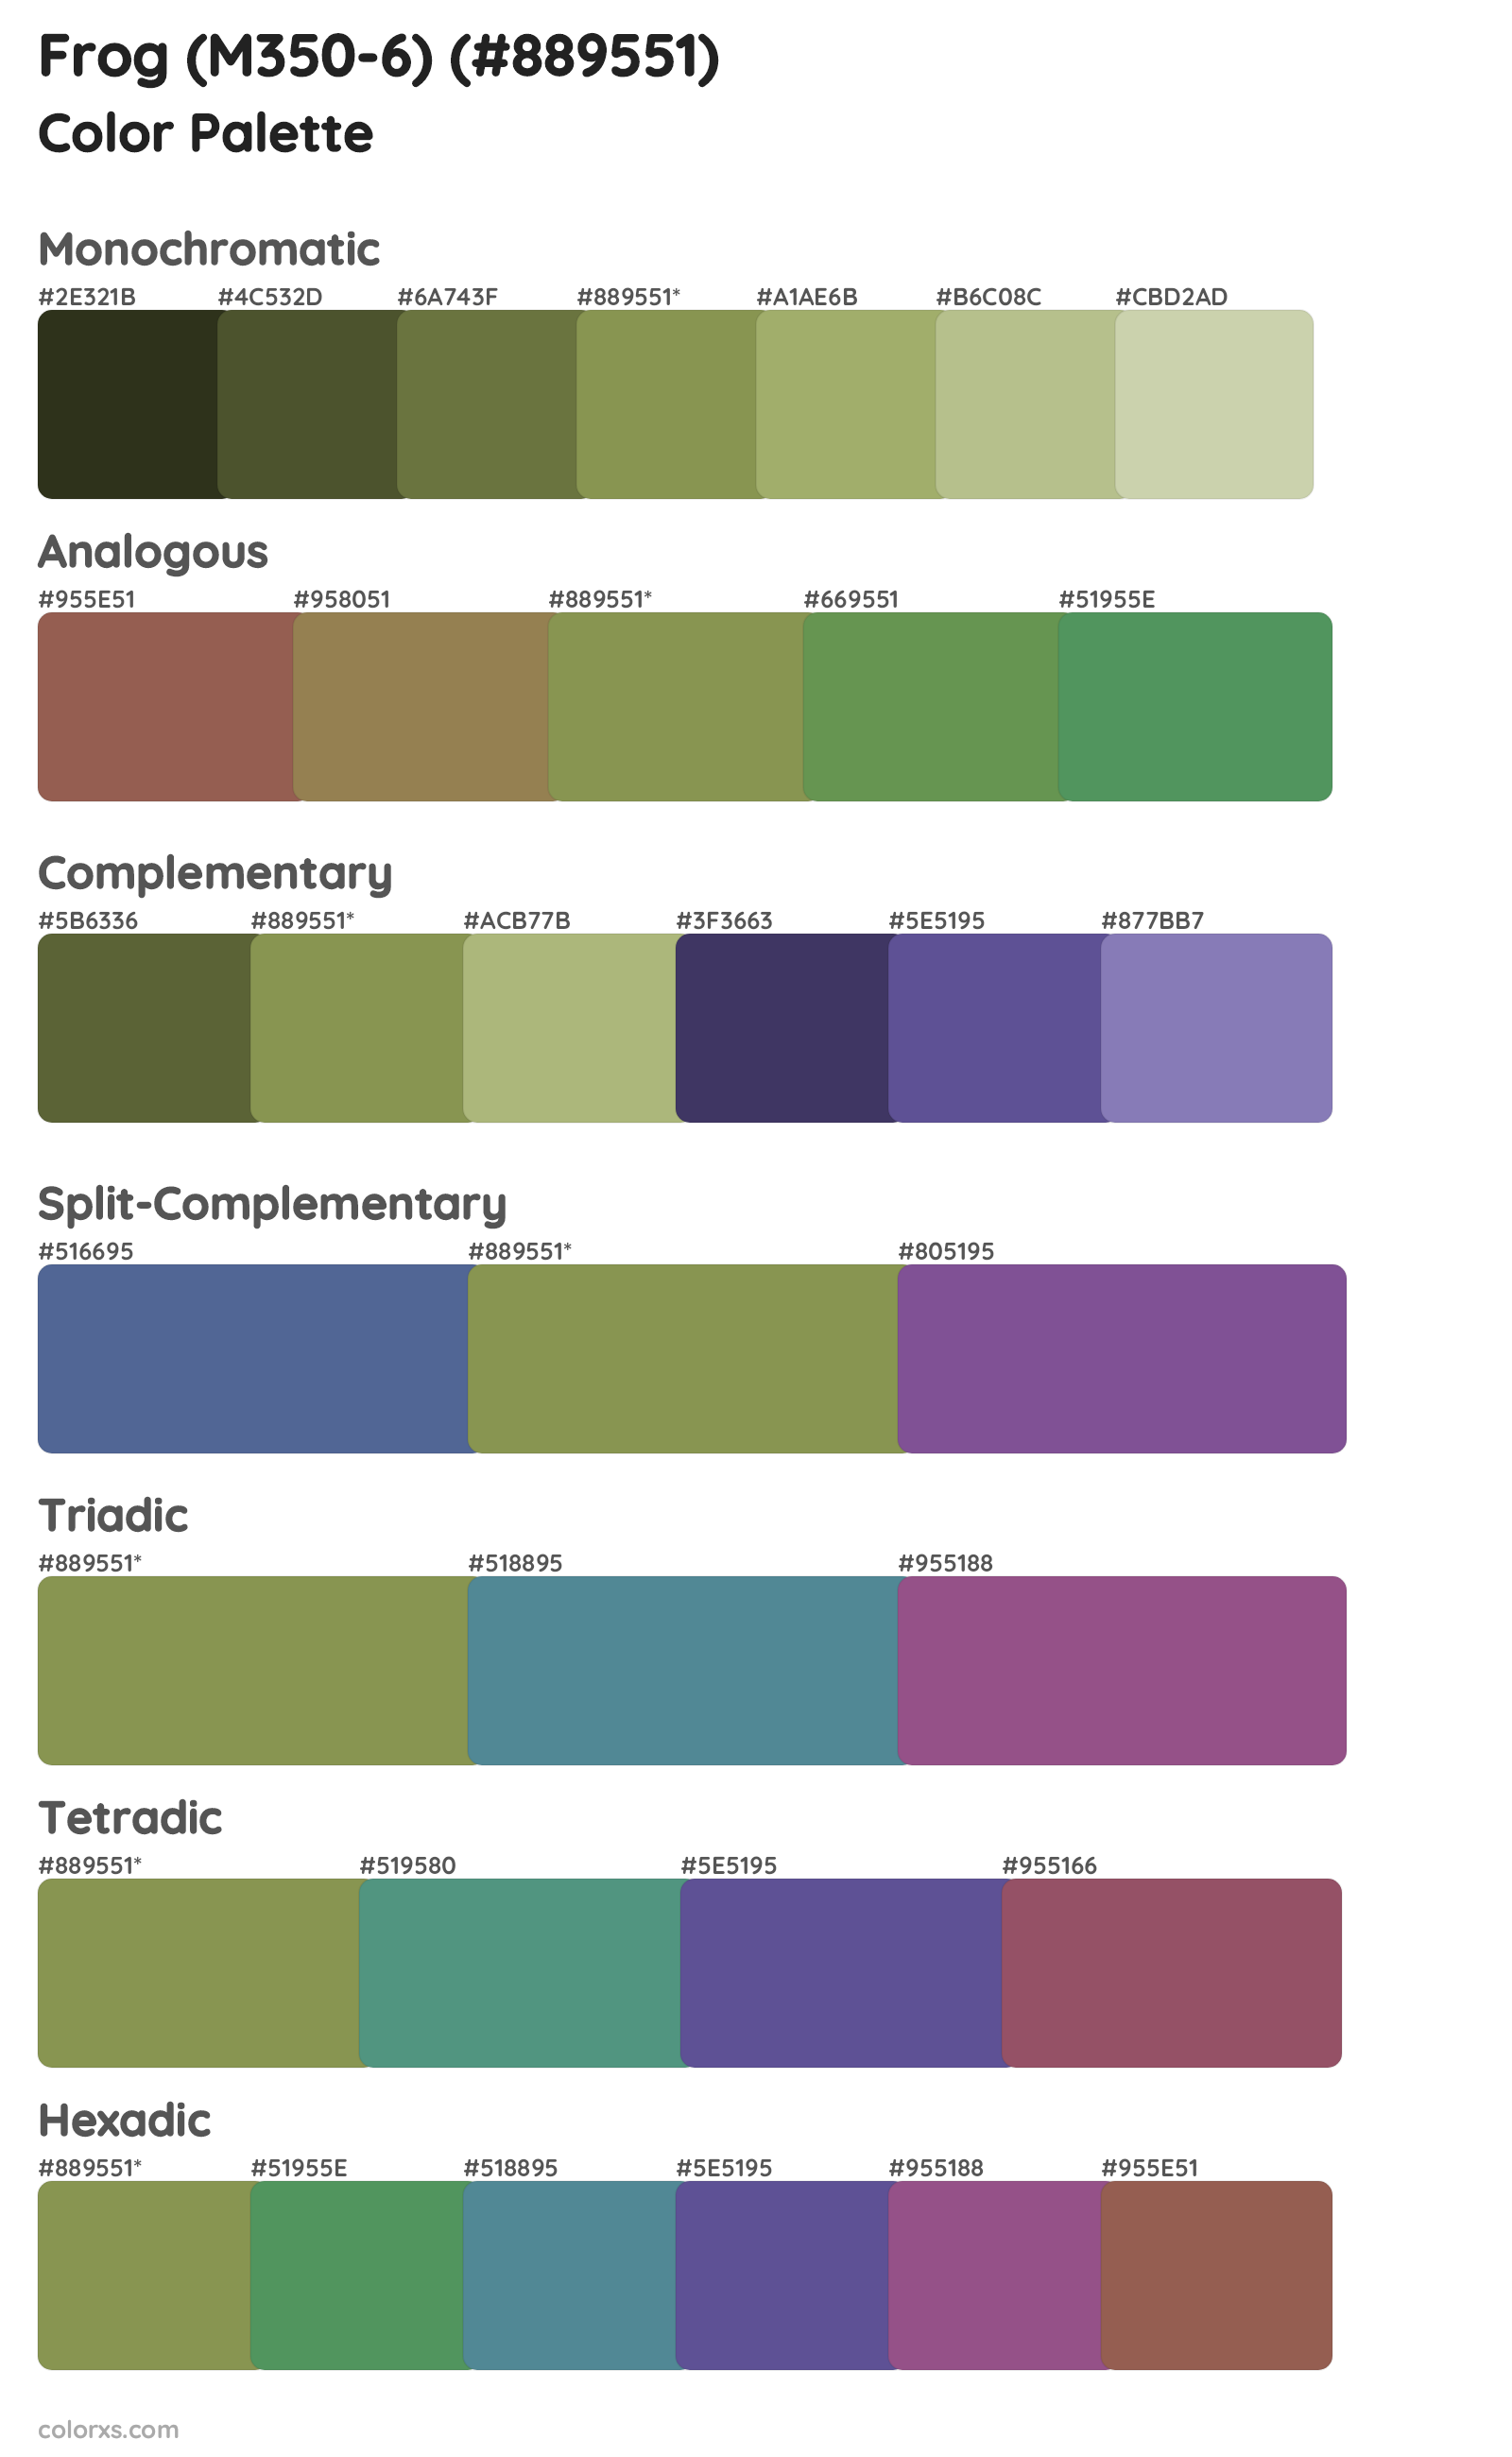 Frog (M350-6) Color Scheme Palettes